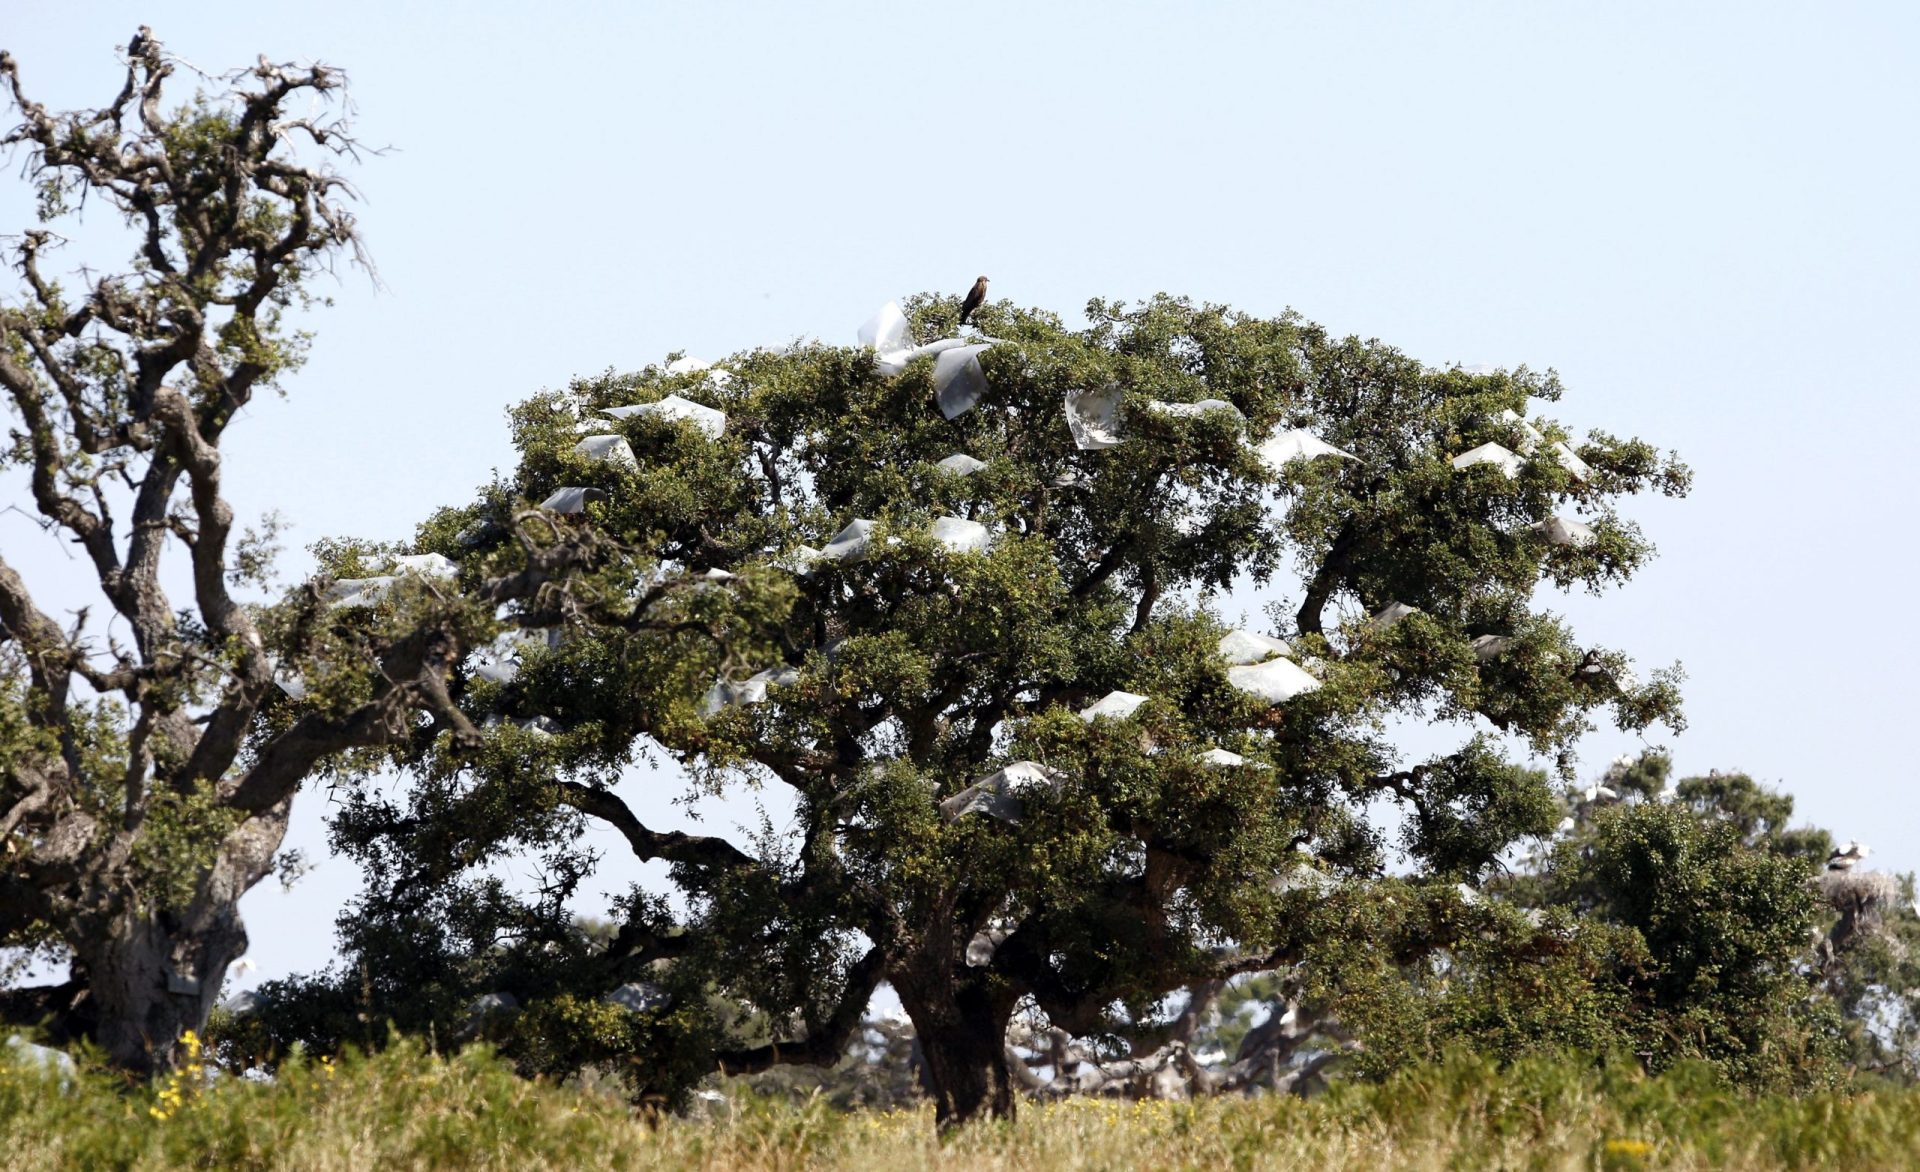 Vista de uno de los alcornoques del siglo XVI que forma parte de la Pajarera de Doñana, afectado por el deterioro que causan el exceso de nidos y la corrosión de las deyecciones de las aves que nidifican en estos árboles.